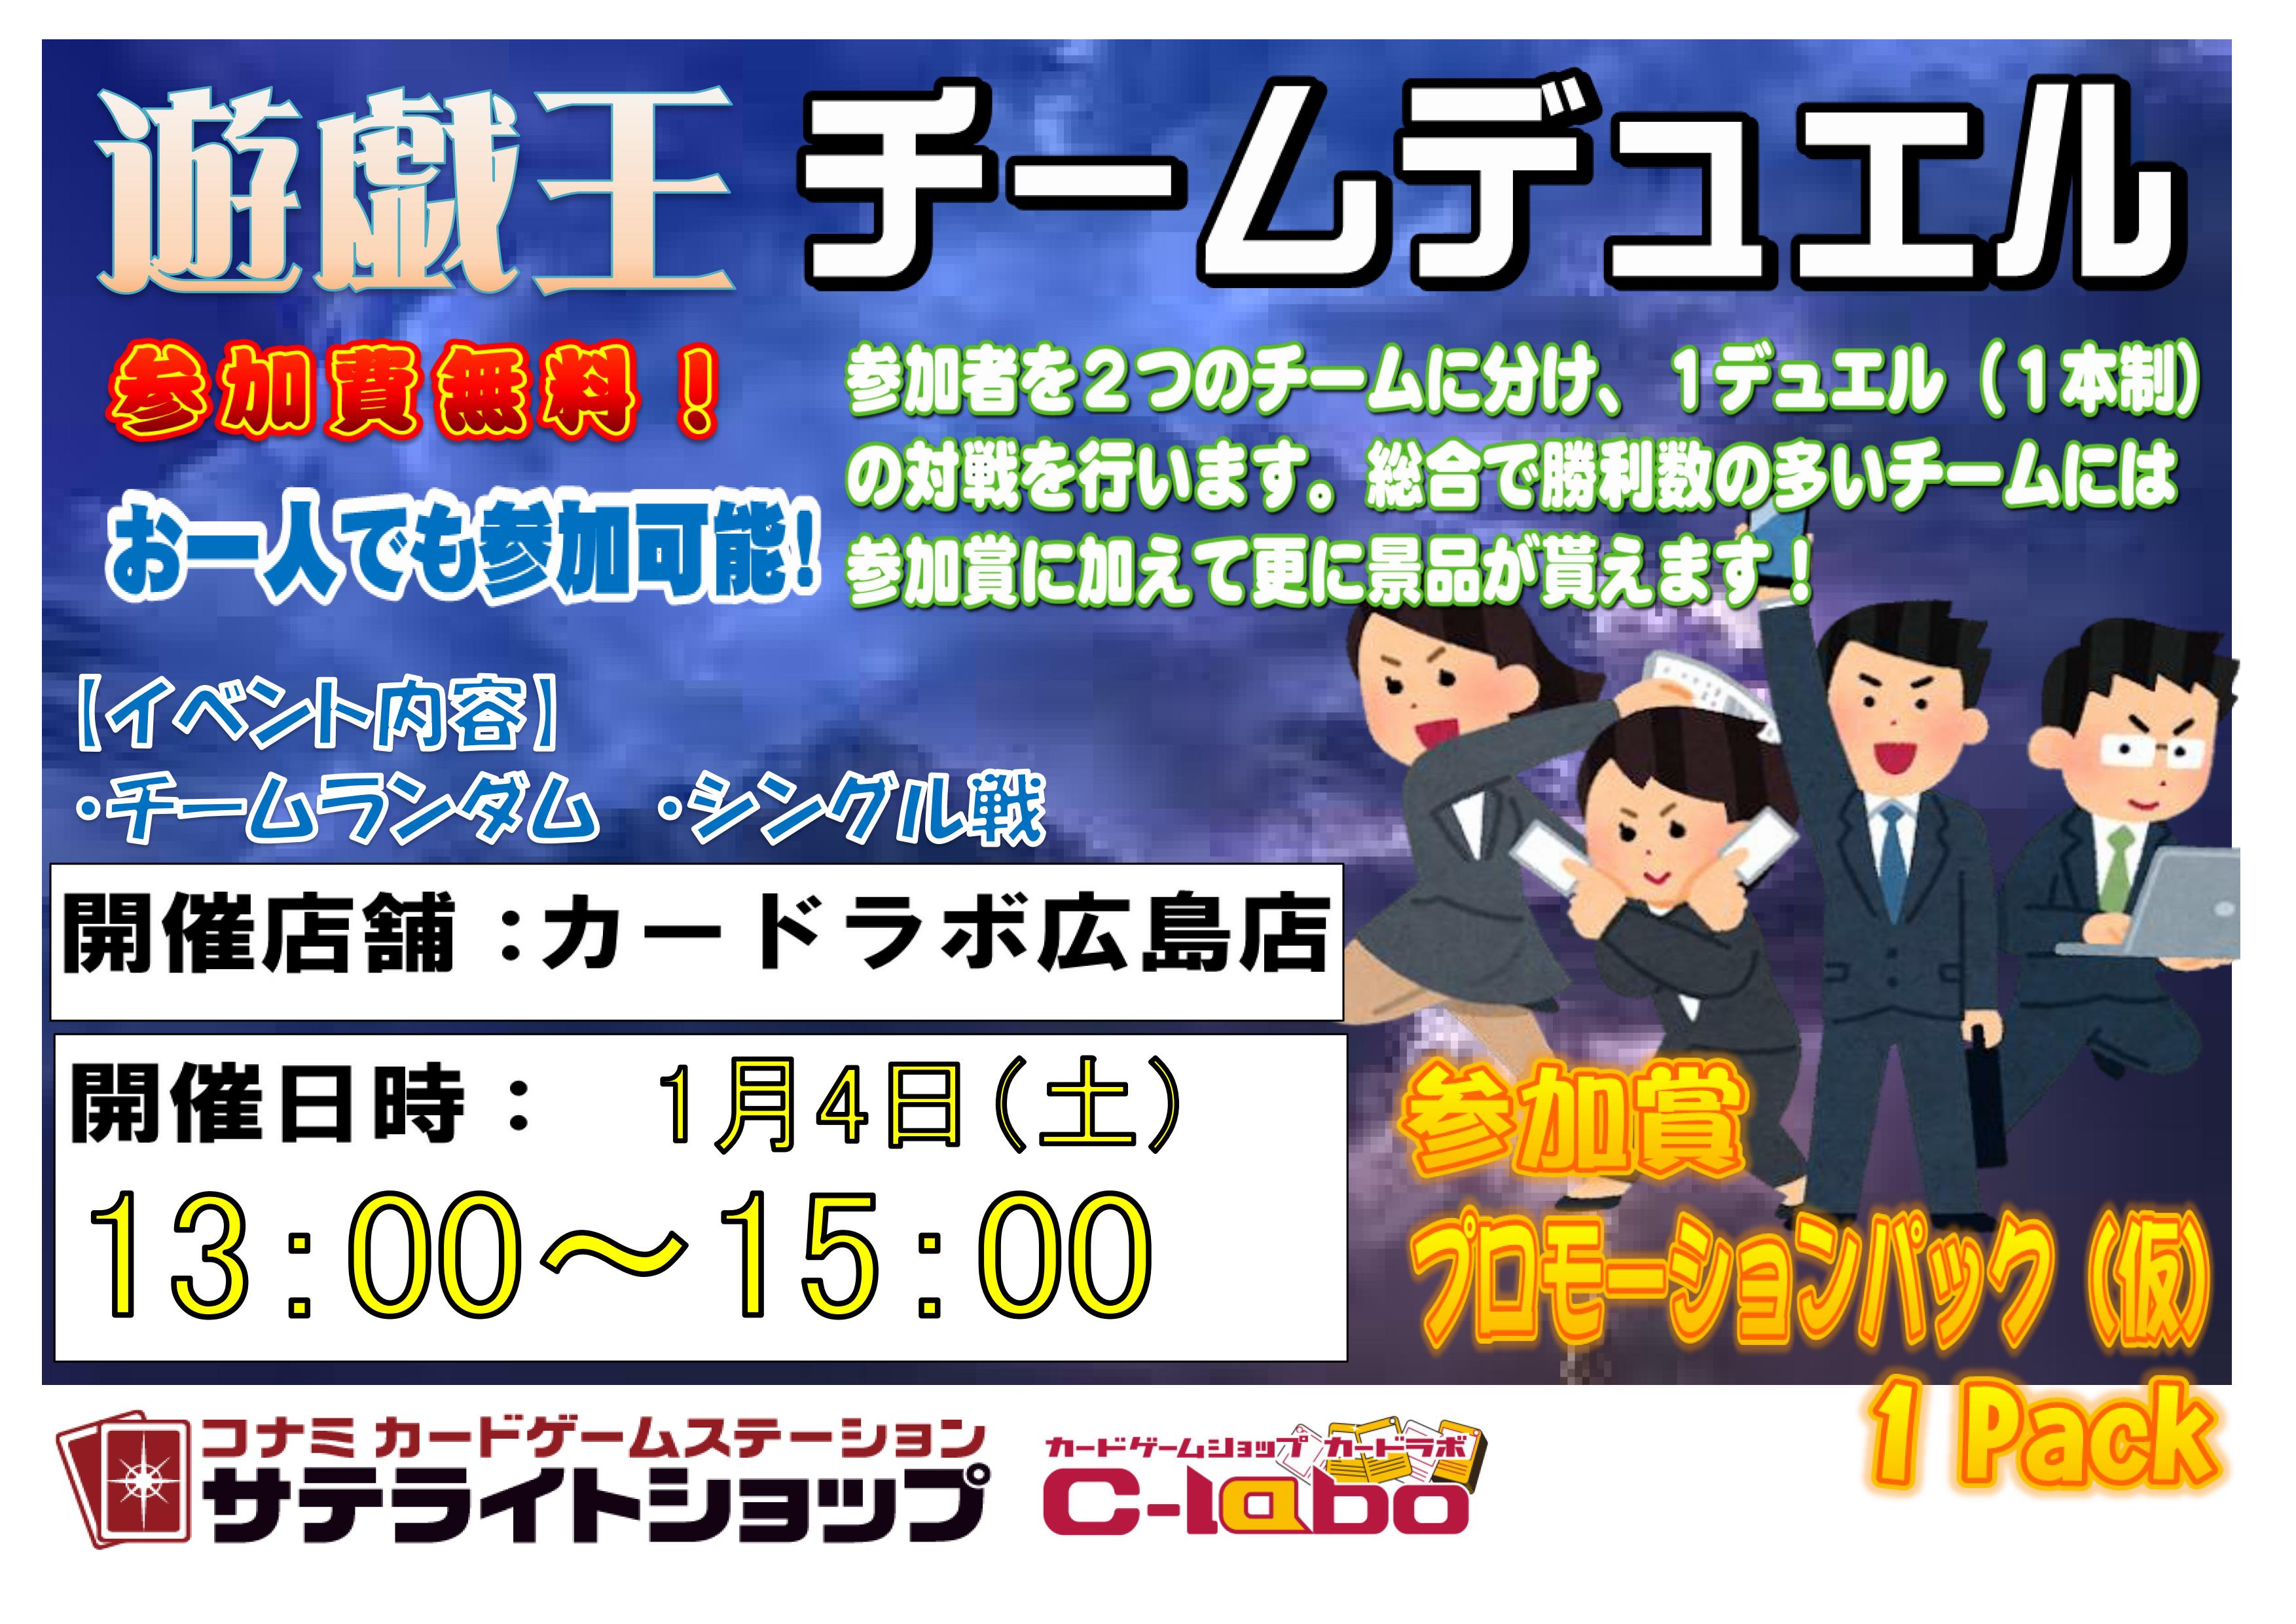 1月遊戯王イベント情報 広島店の店舗ブログ カードラボ